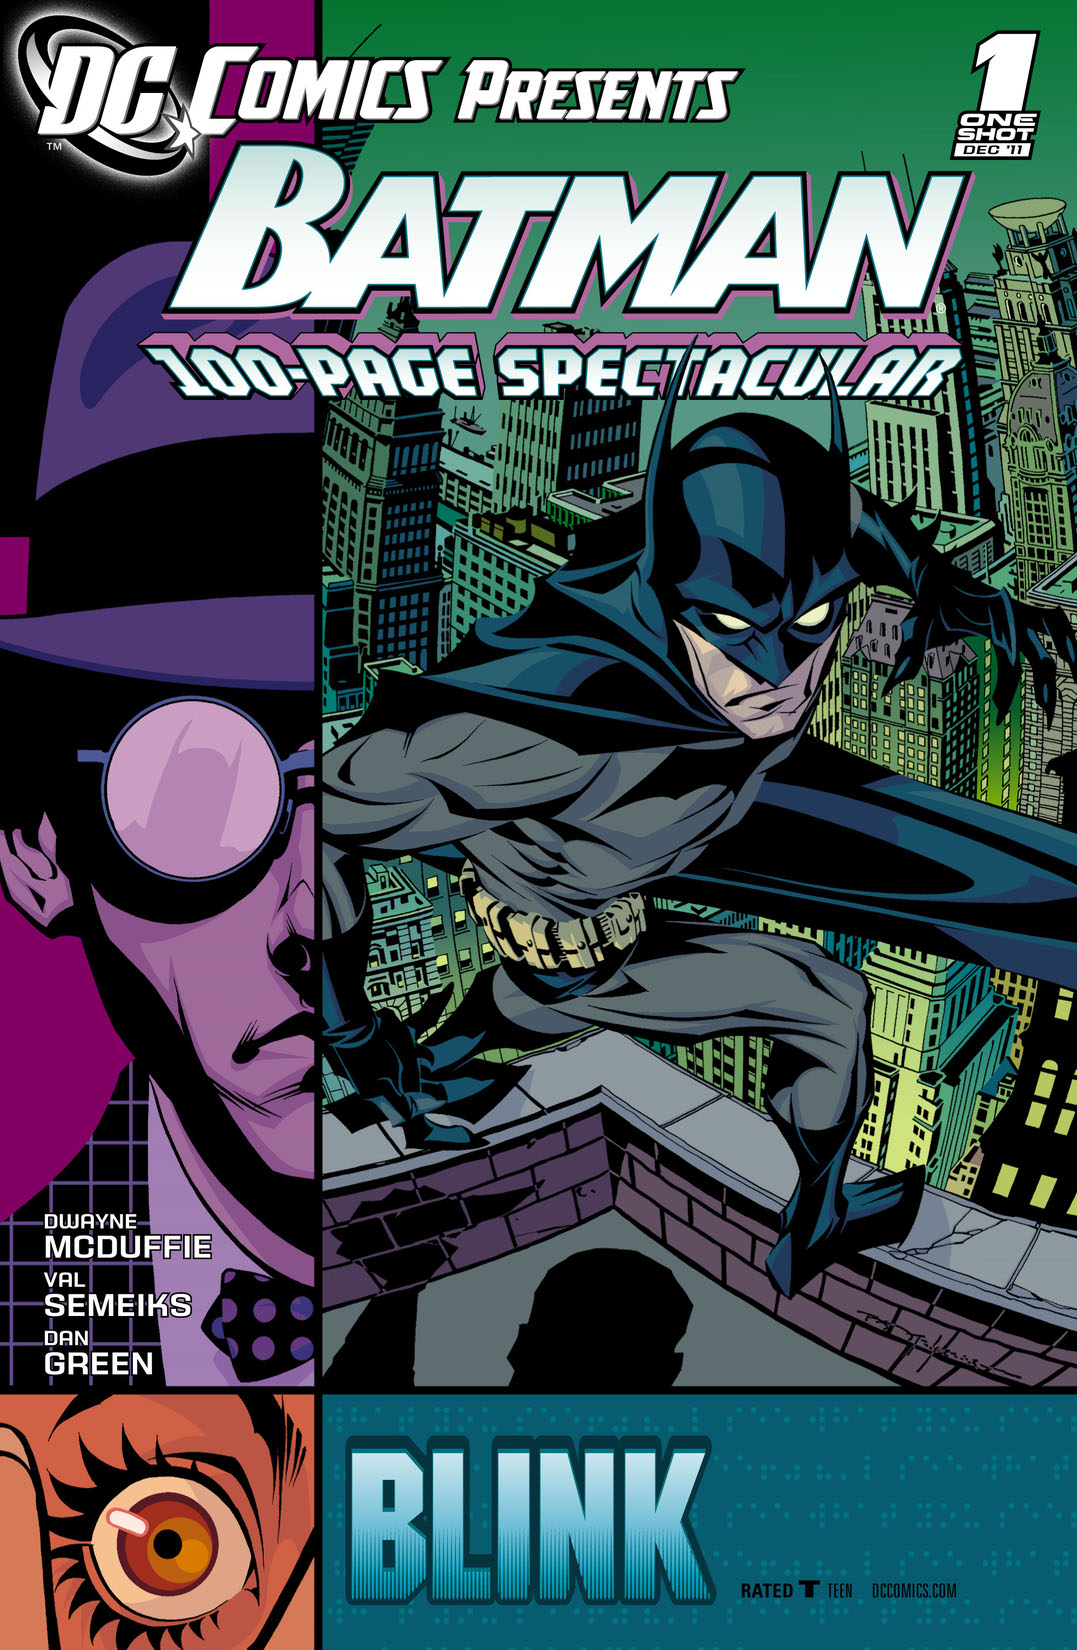 DC Comics Presents: Batman - Blink (2011-) #1 preview images